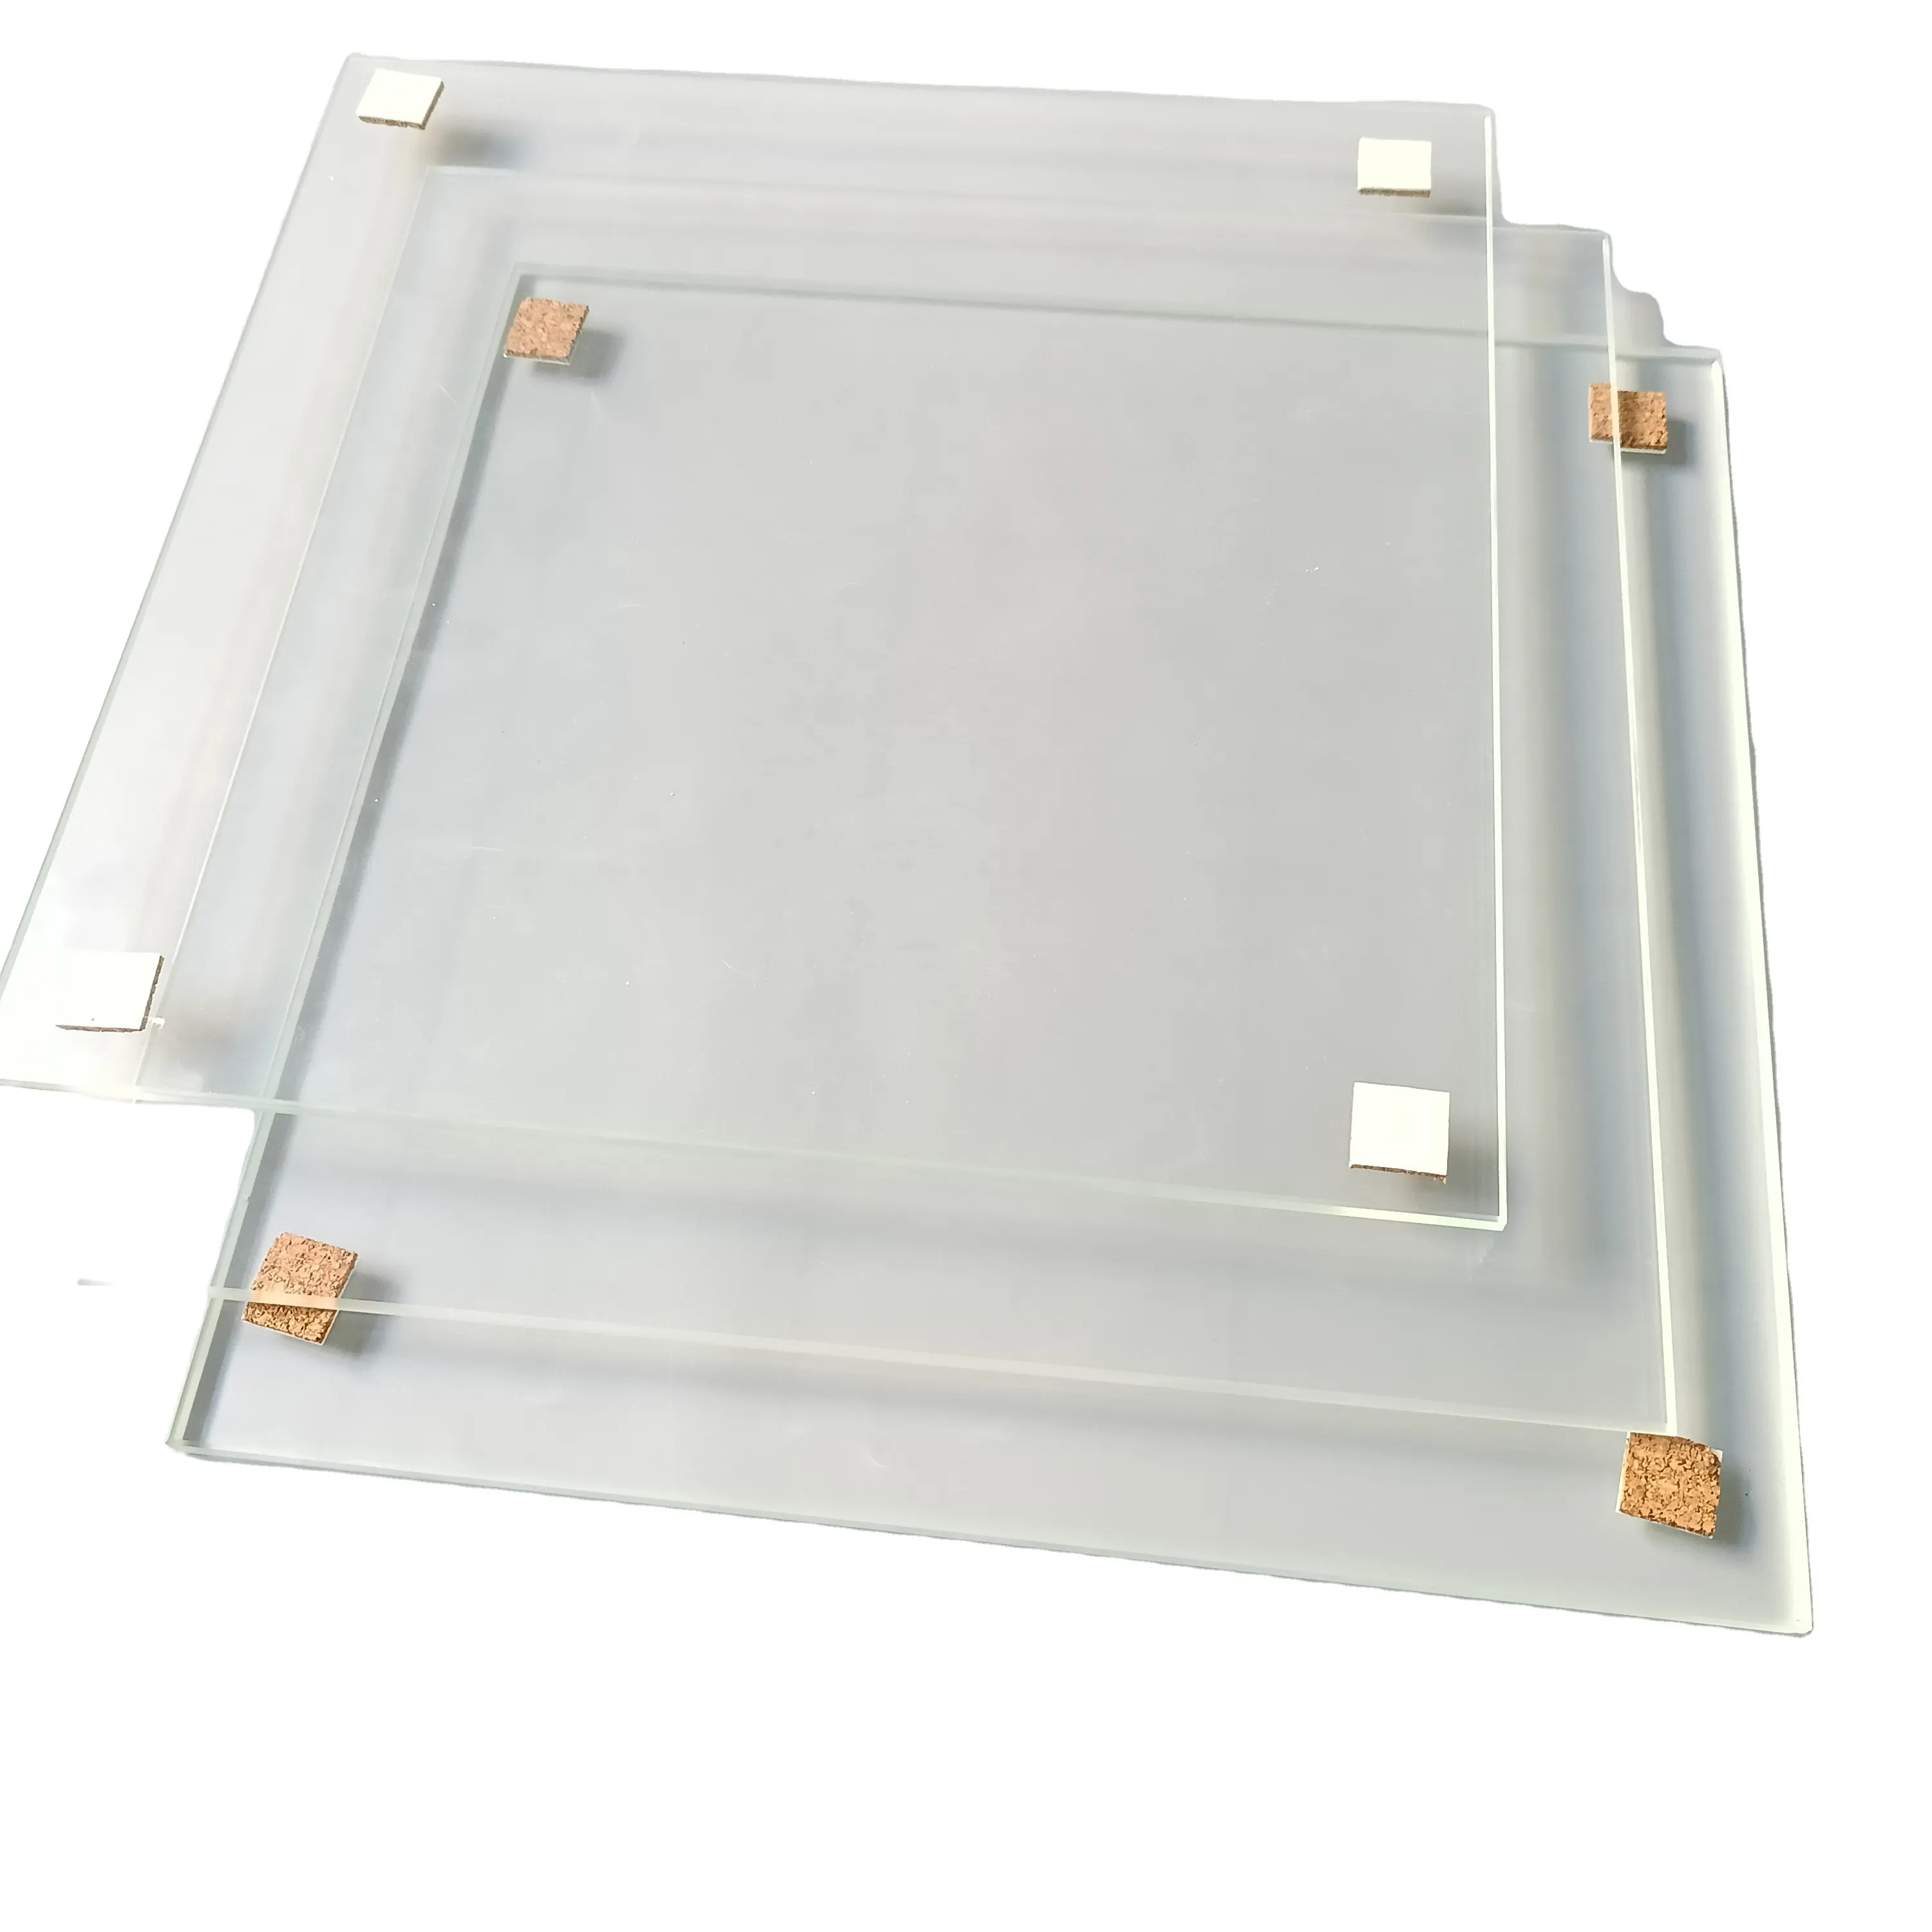 Isıya dayanıklı borosilikat cam 3.3 temperli borosilikat Sight cam panel yüksek sıcaklık cam kapak